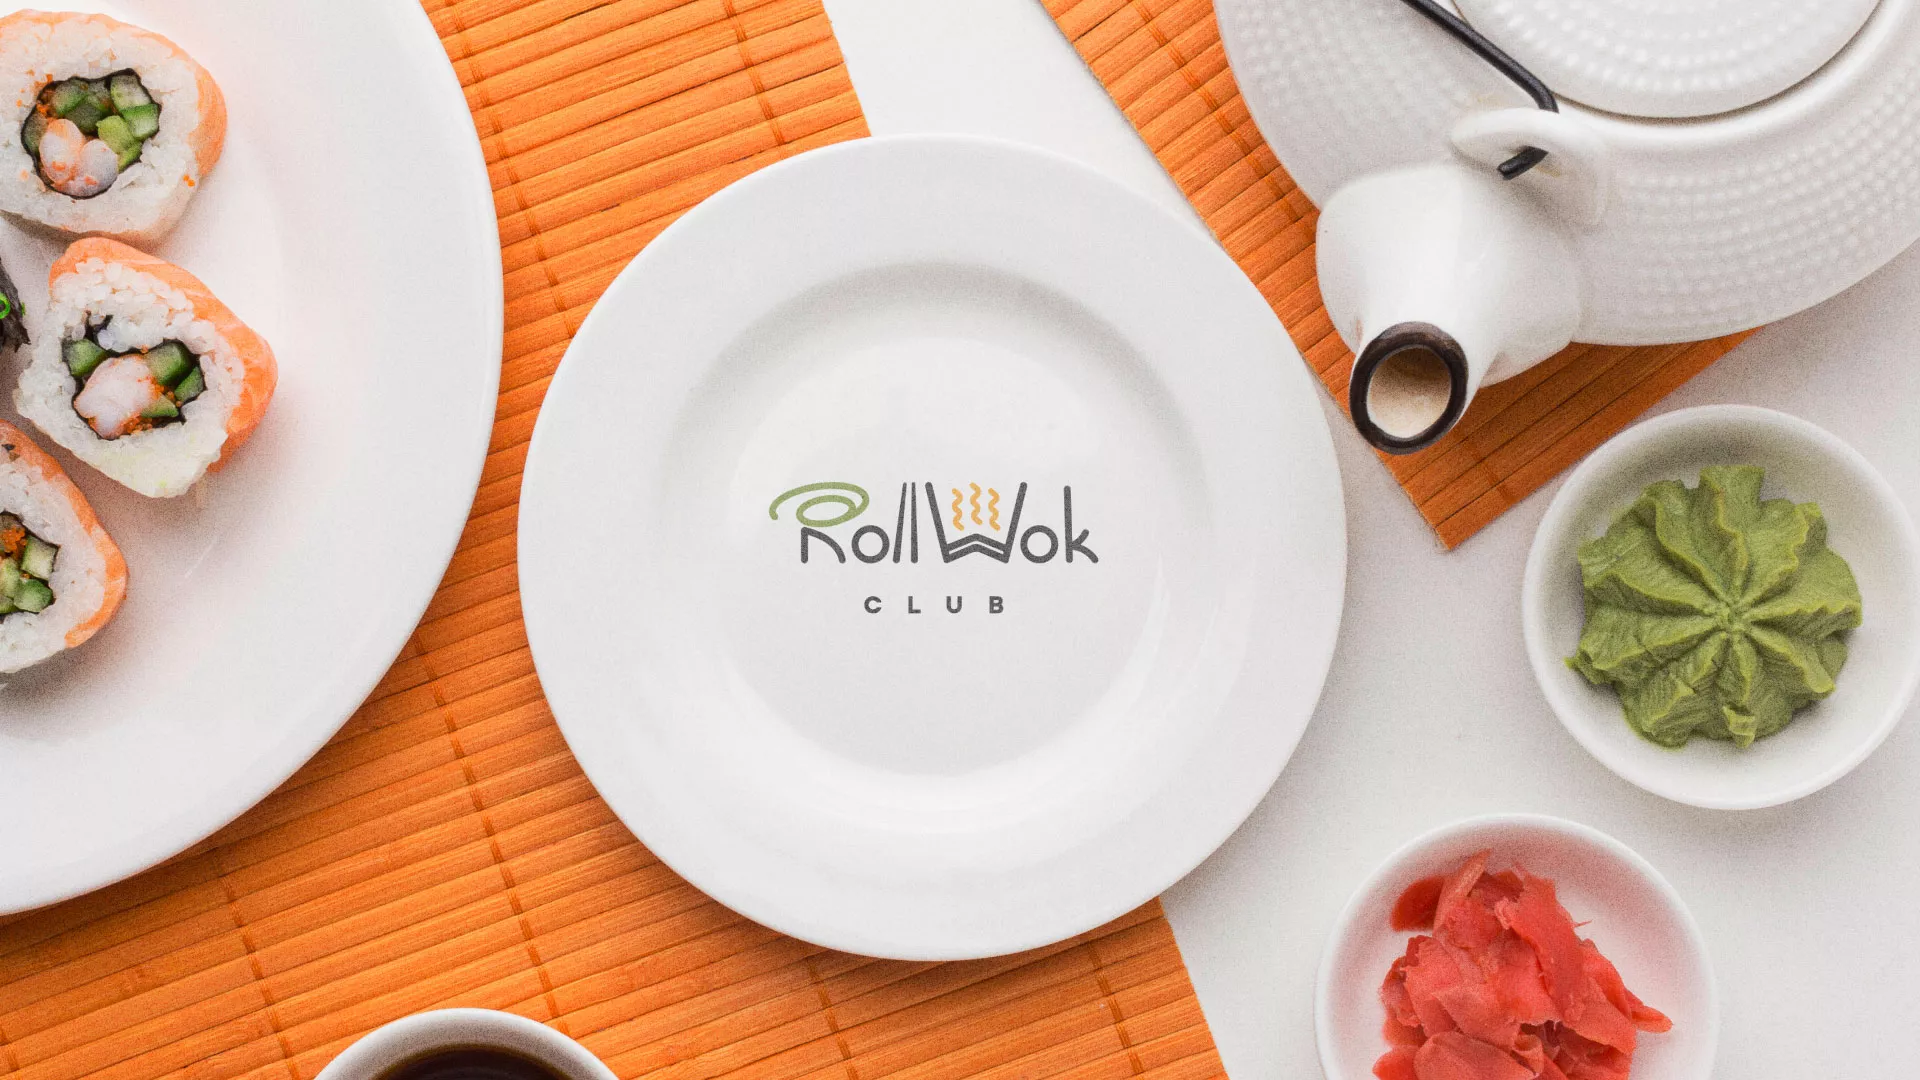 Разработка логотипа и фирменного стиля суши-бара «Roll Wok Club» в Красном Холме